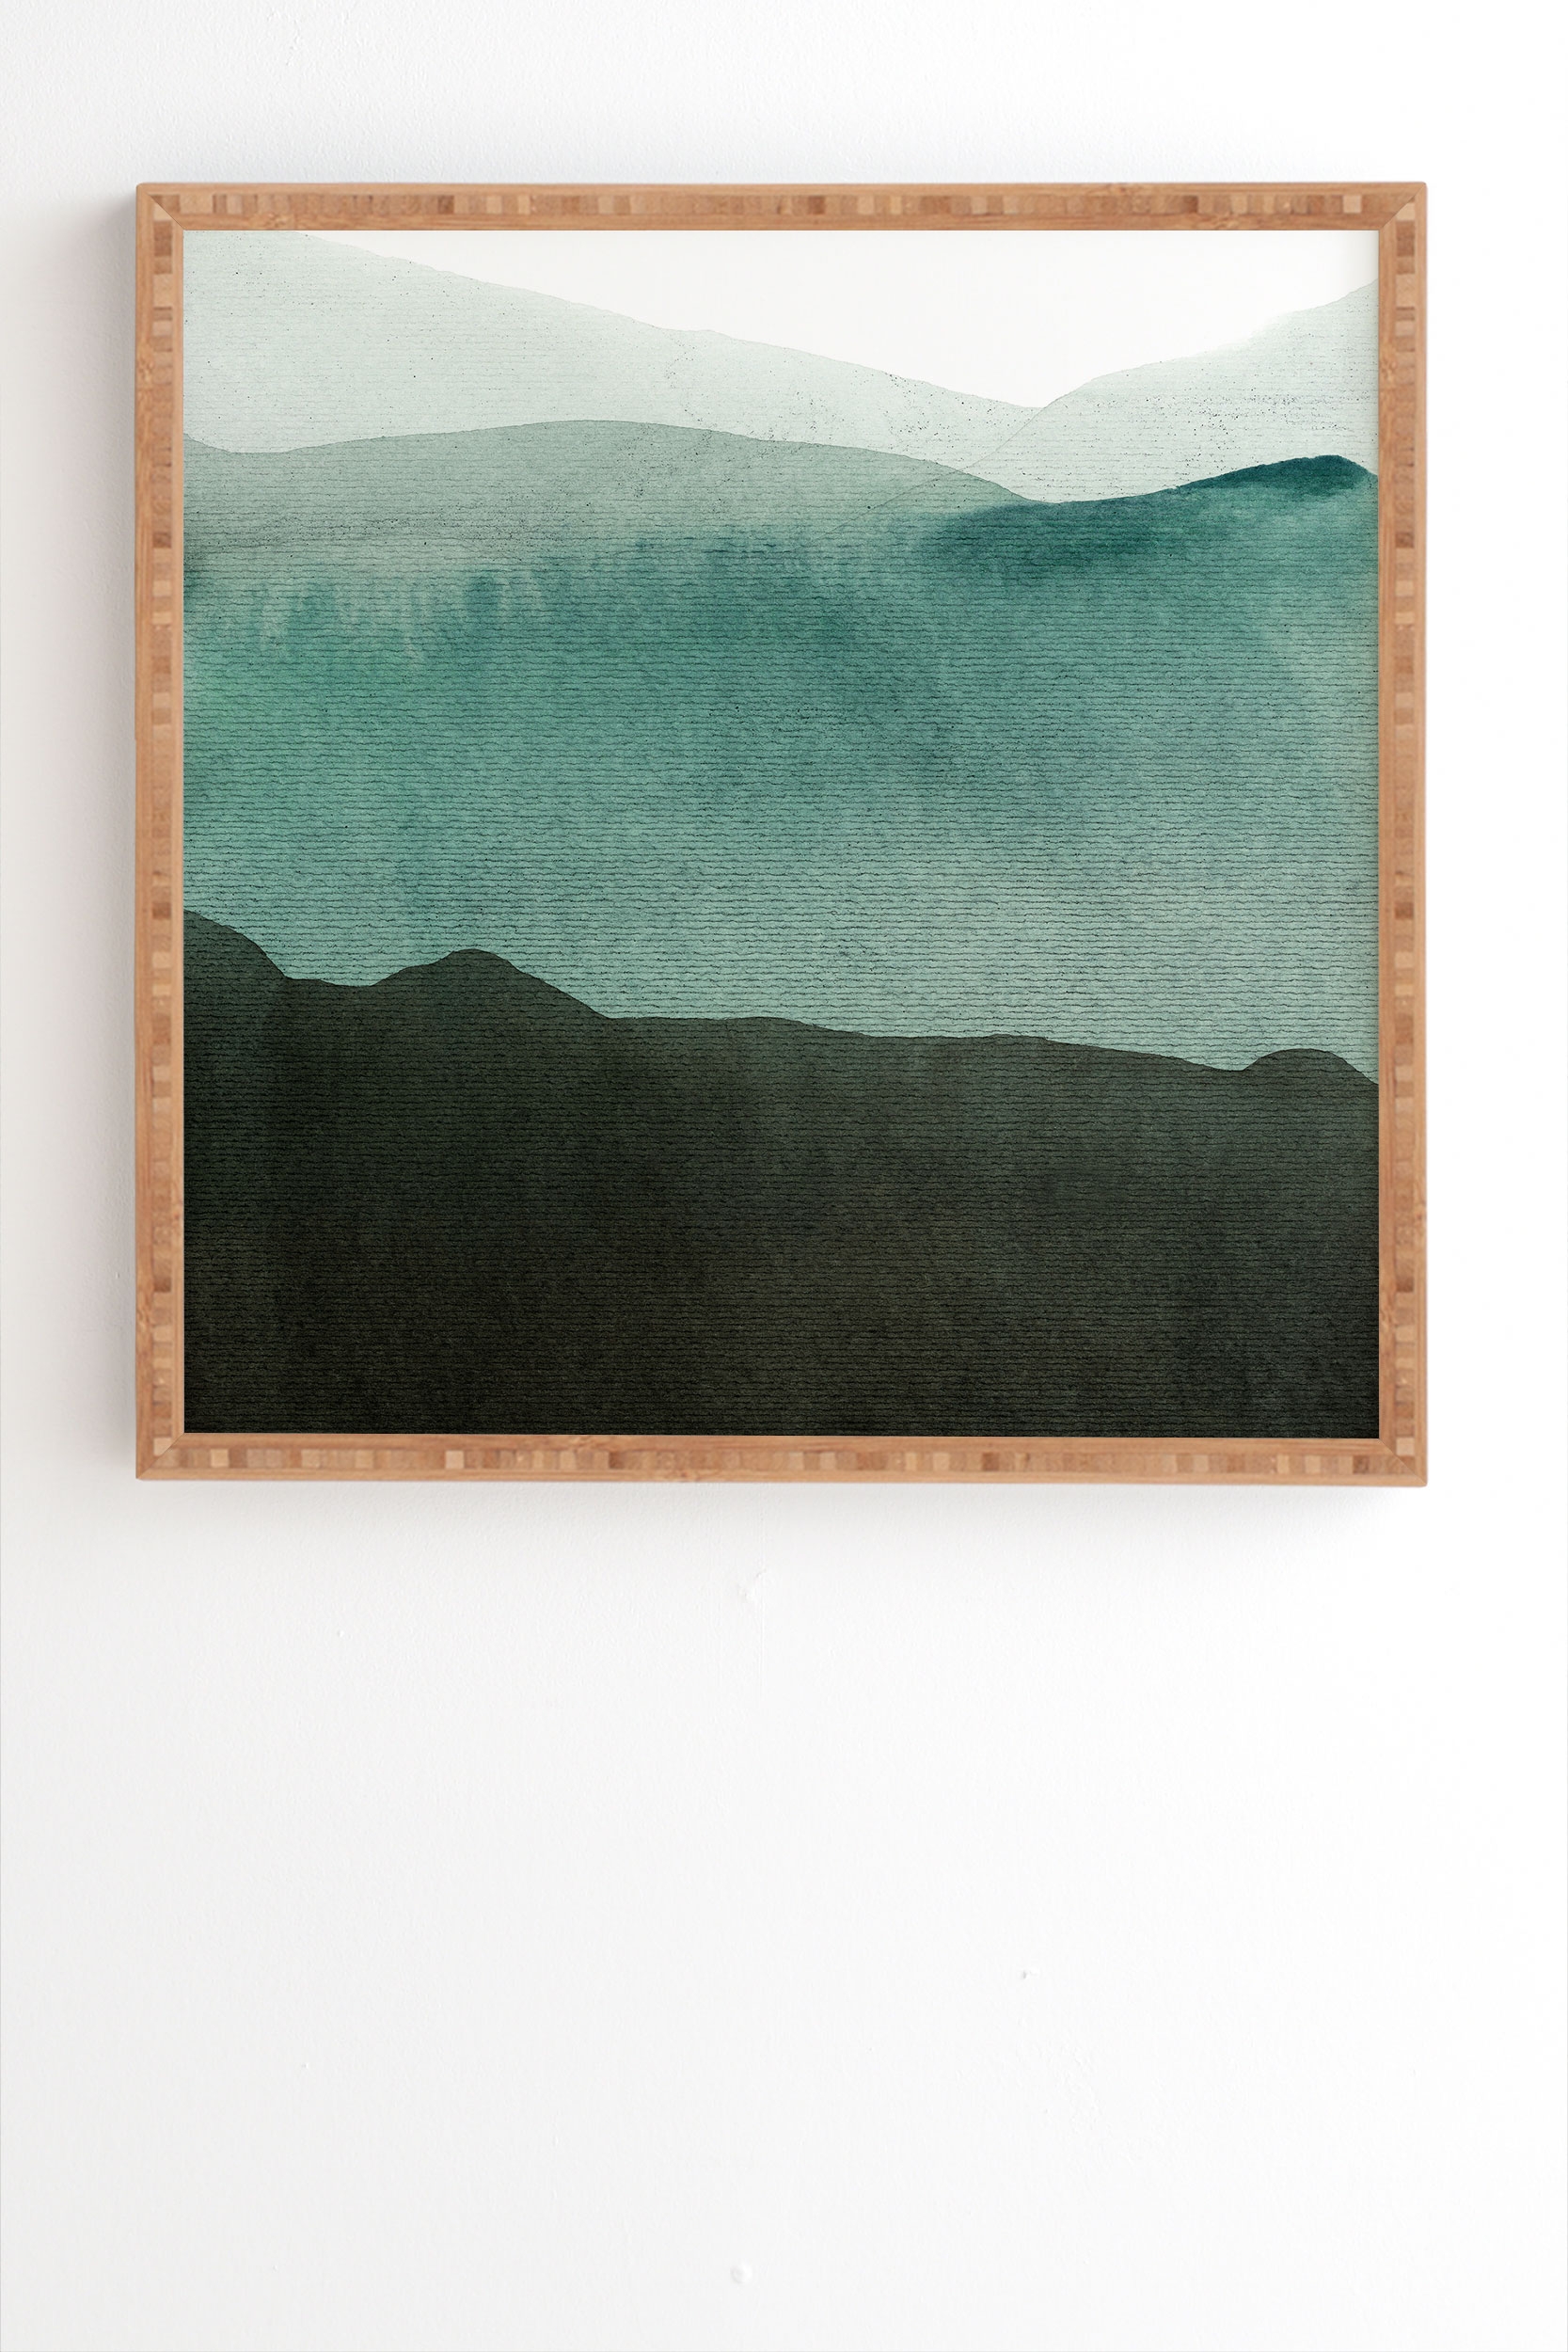 Valleys Deep Mountains High by Iris Lehnhardt - Framed Wall Art Bamboo 20" x 20" - Image 0